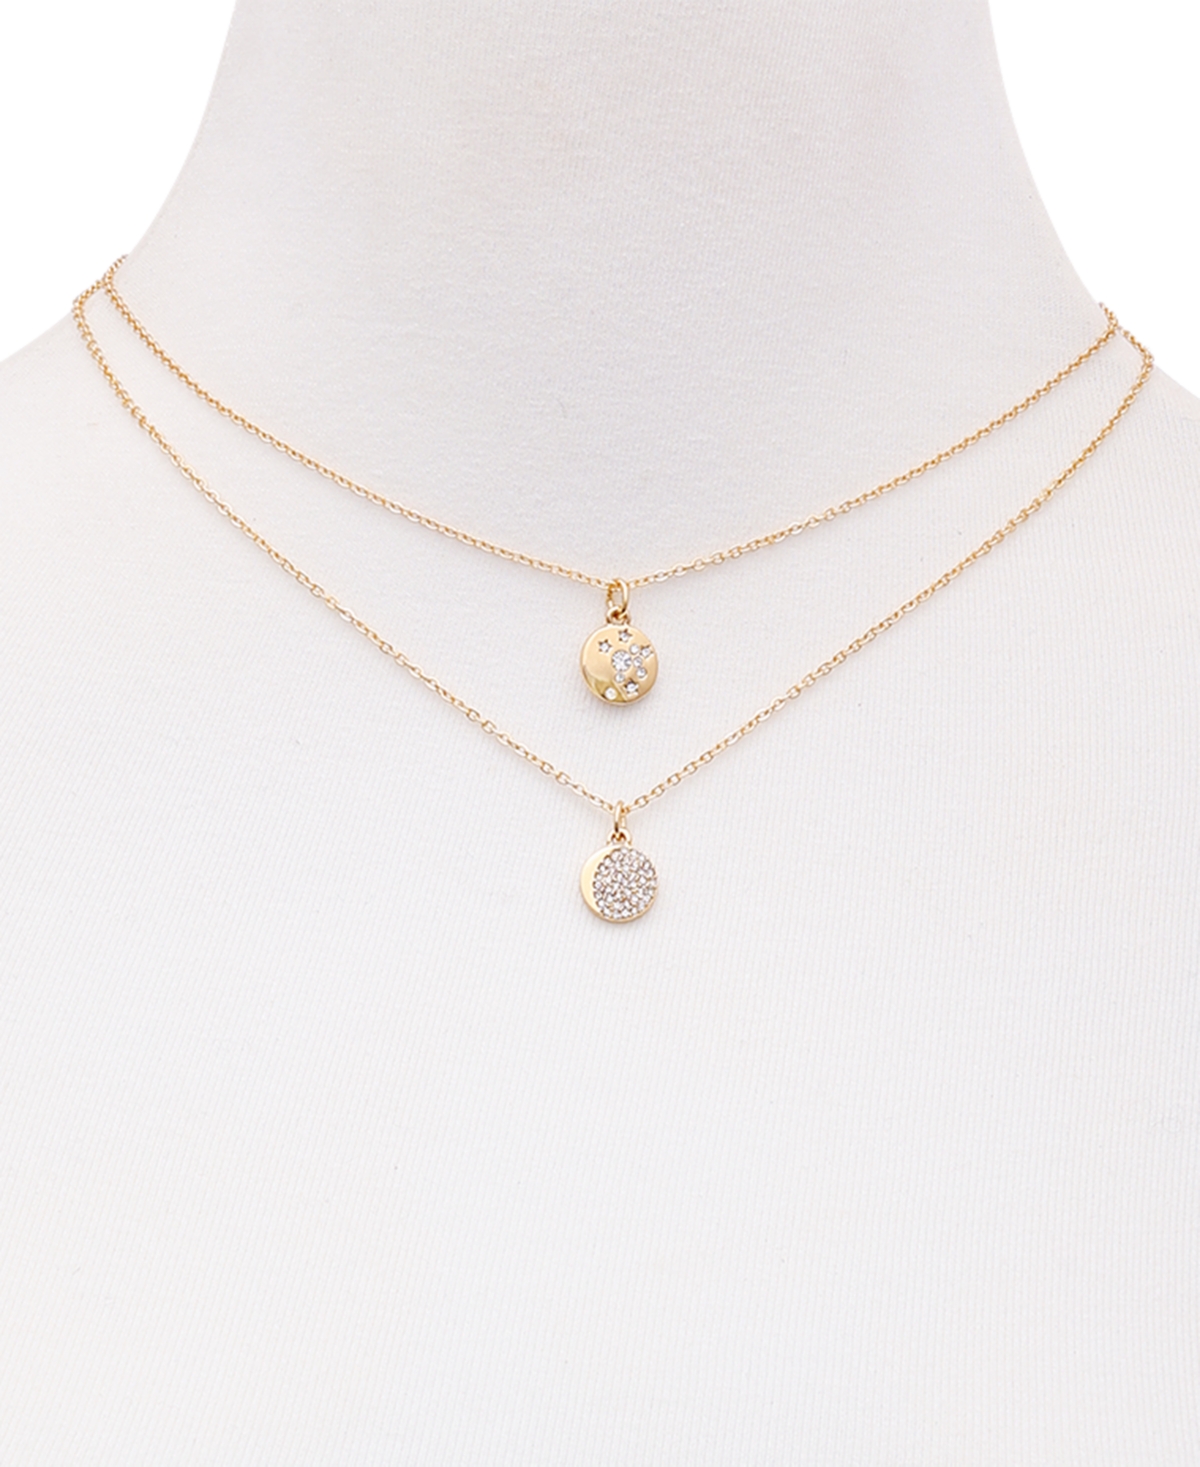 Shop Guess Gold-tone 2-pc. Set Crystal Celestial Pendant Necklaces, 16" + 2" Extender